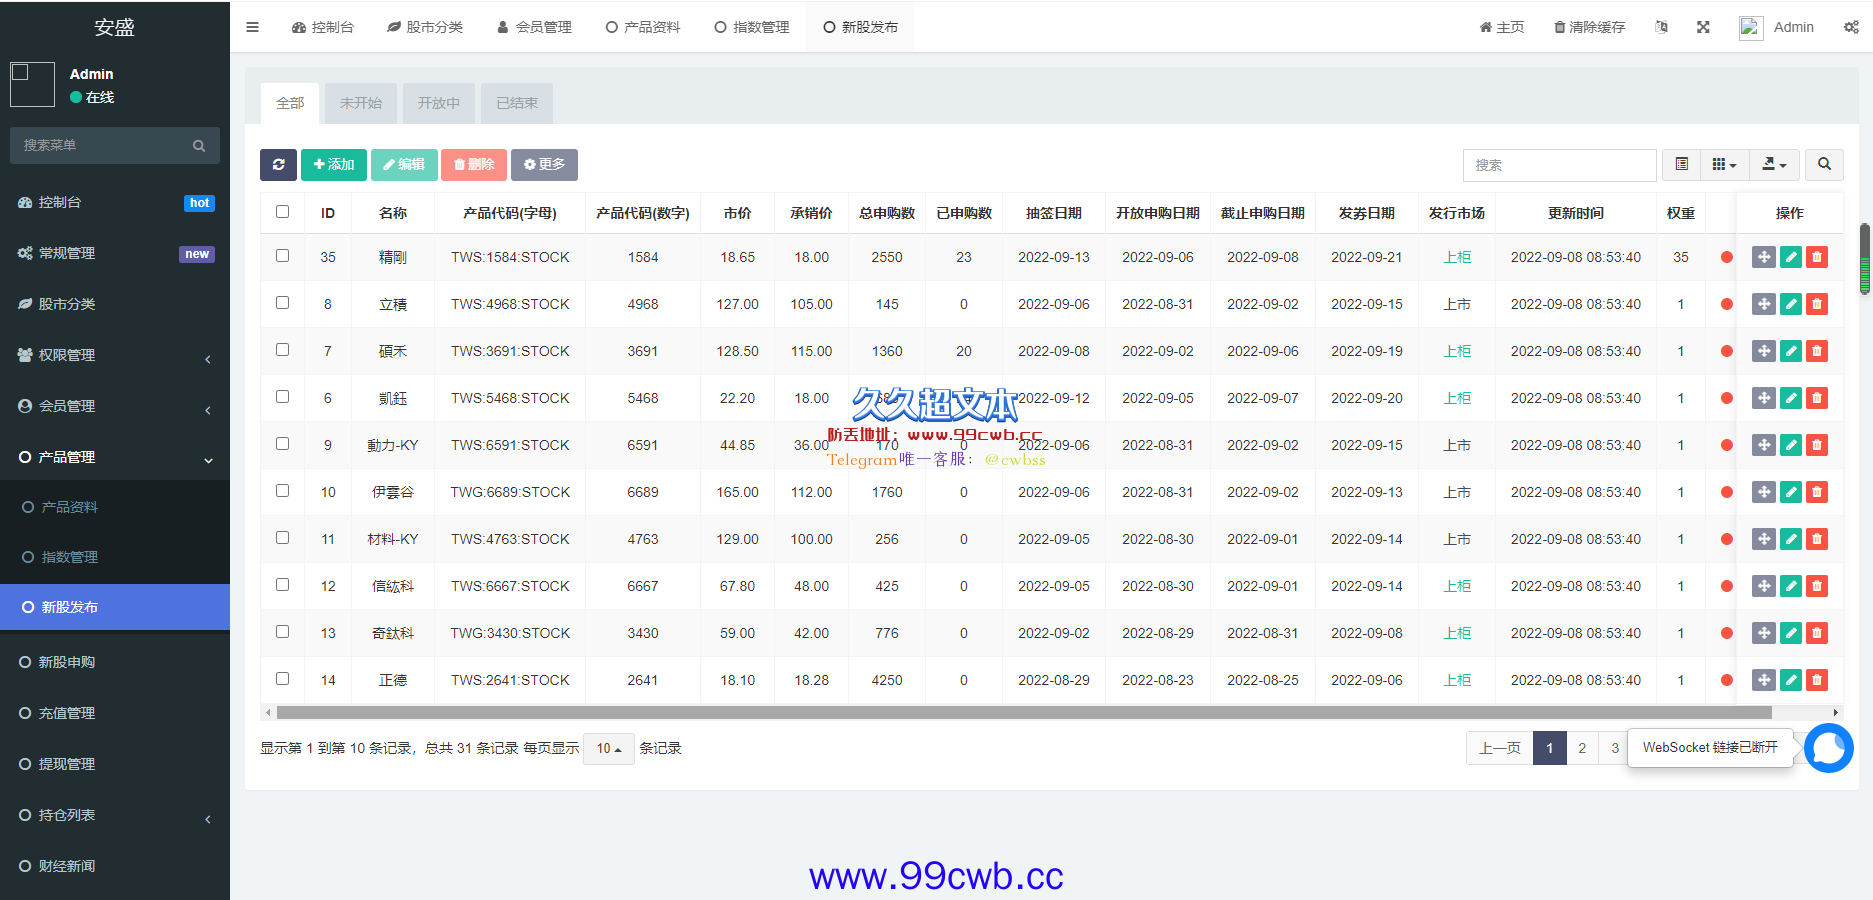 【商业资源】新版uinapp股票配资源码/台湾股票系统/申购折扣交易系统插图12